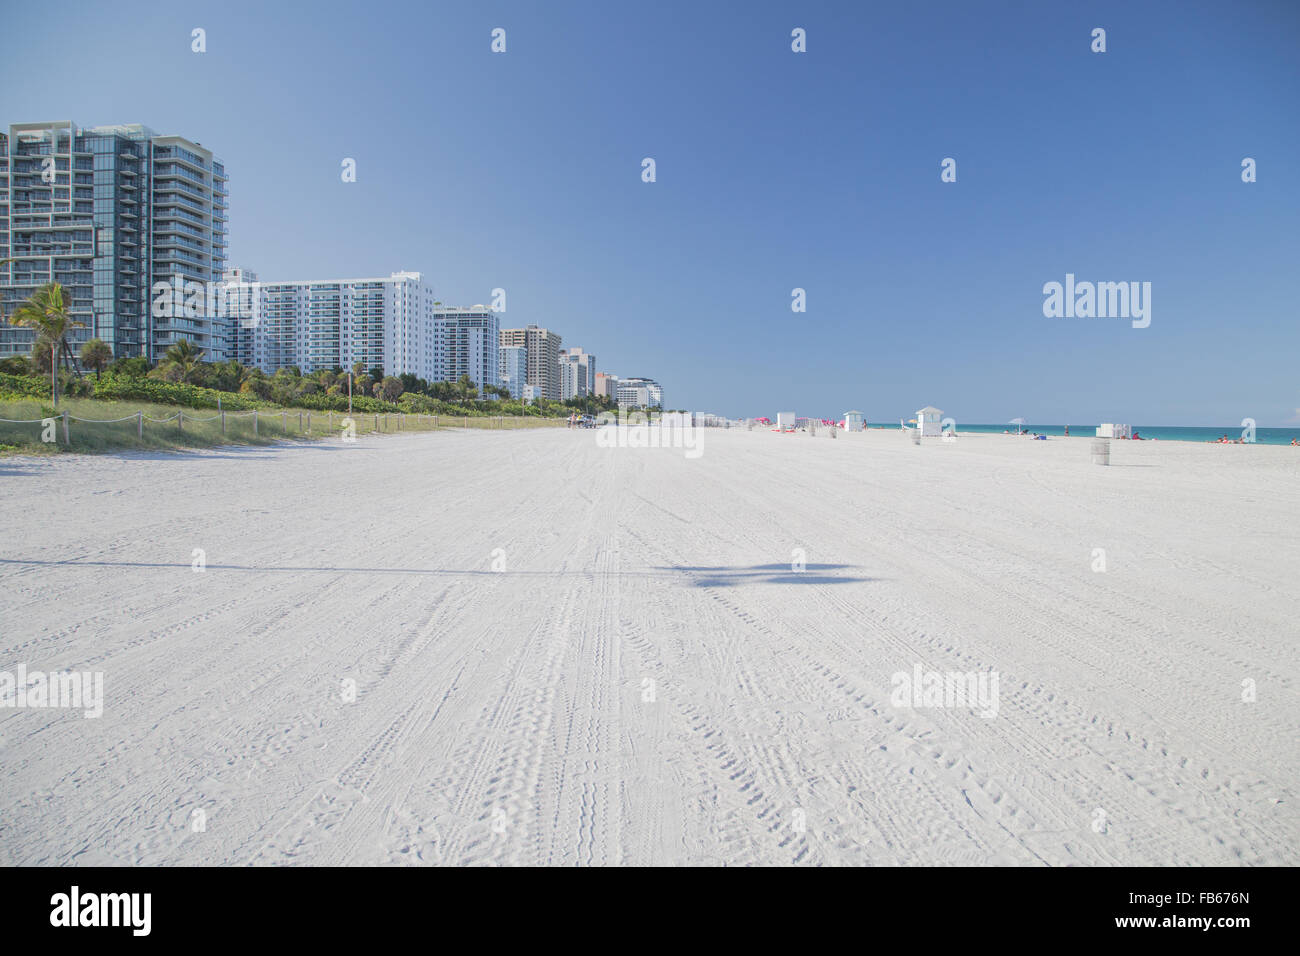 Inprinted les pneus de véhicules répartis sur la plage de sable blanc accompagné d'une silhouette d'un palmier dans la région de South Beach de Miami Beach, en Floride. Banque D'Images